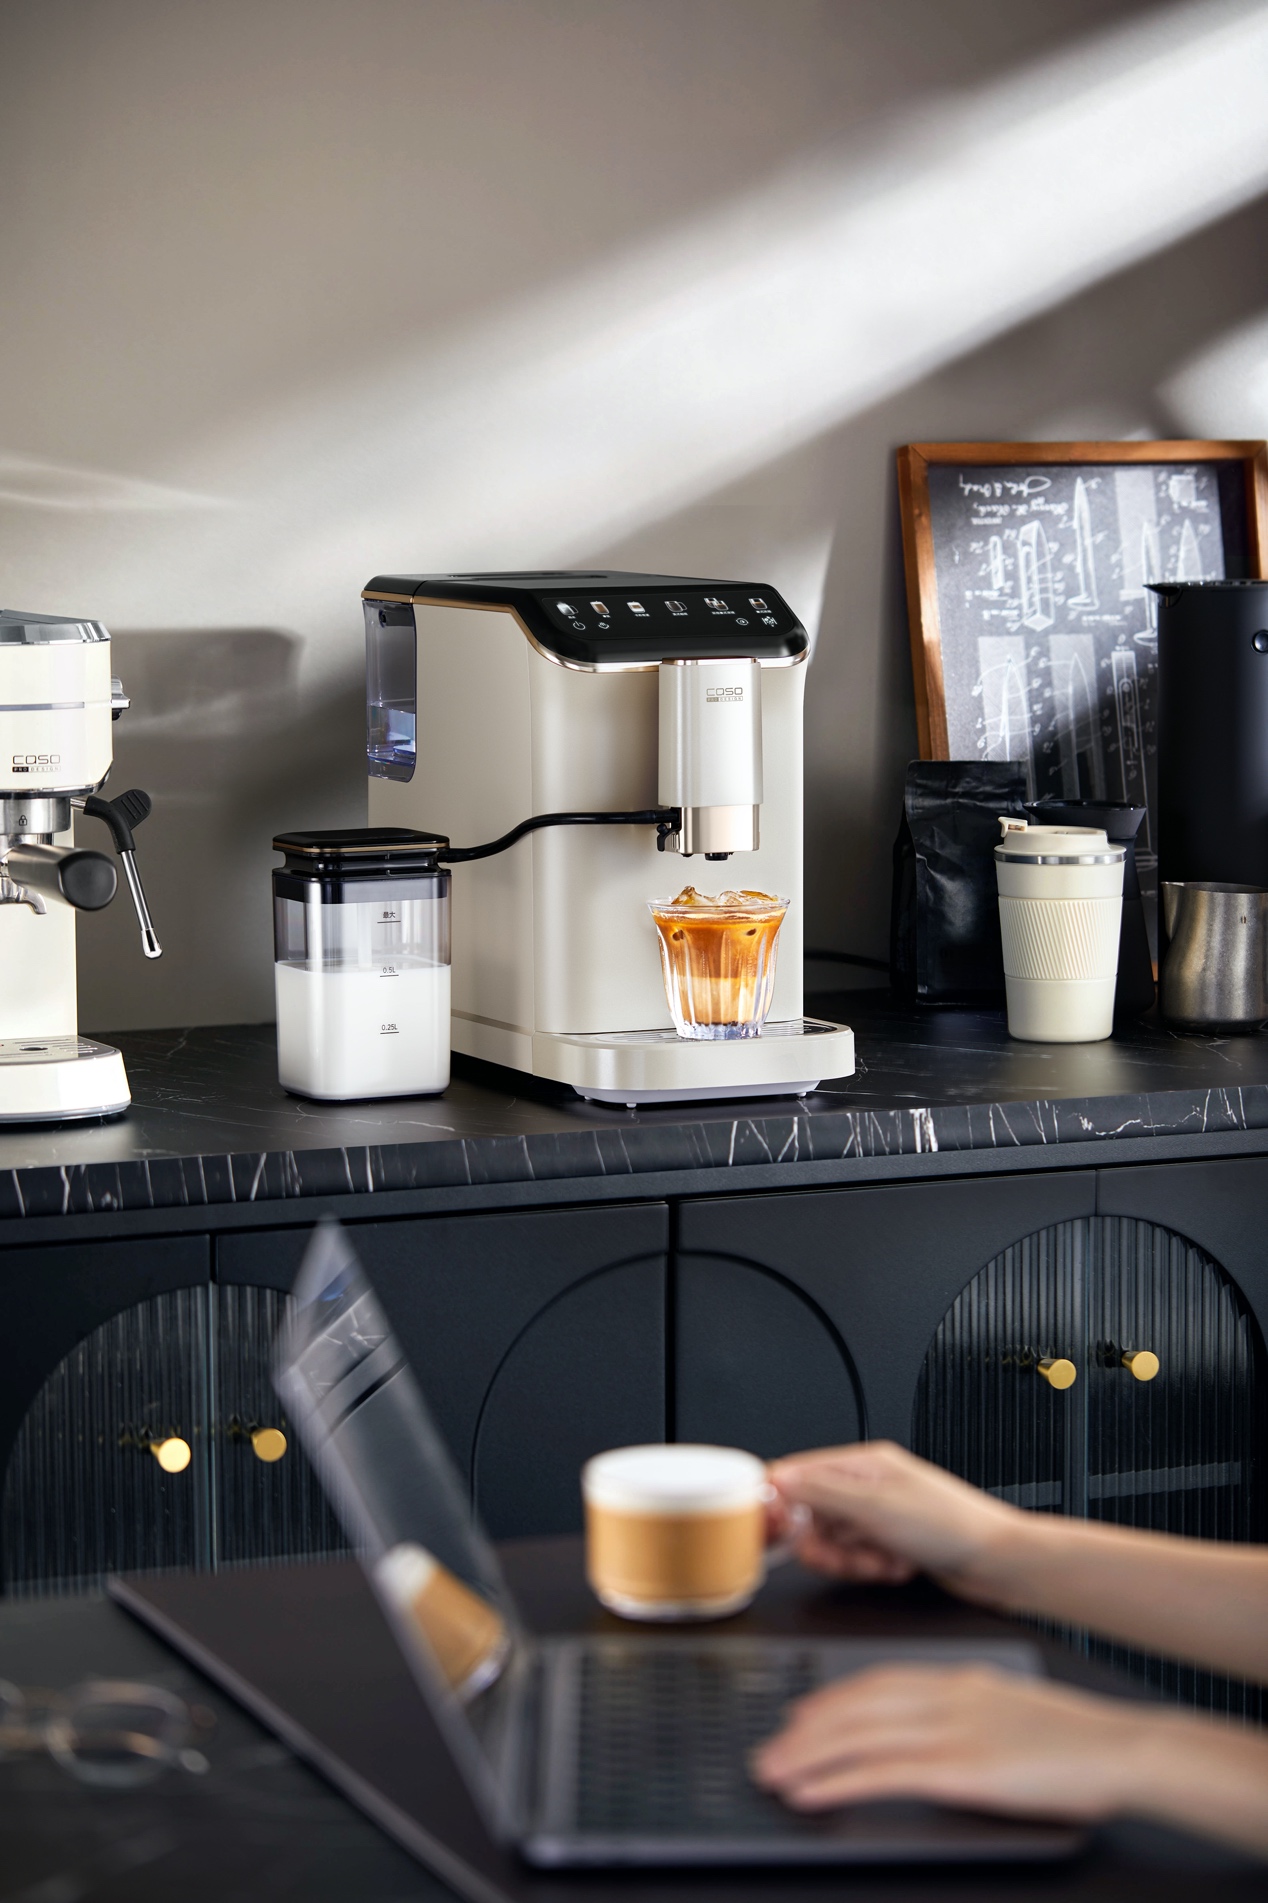 忙碌职场自由饮咖，全靠约1-2分钟快速出杯的卡梭全自动拿铁咖啡机